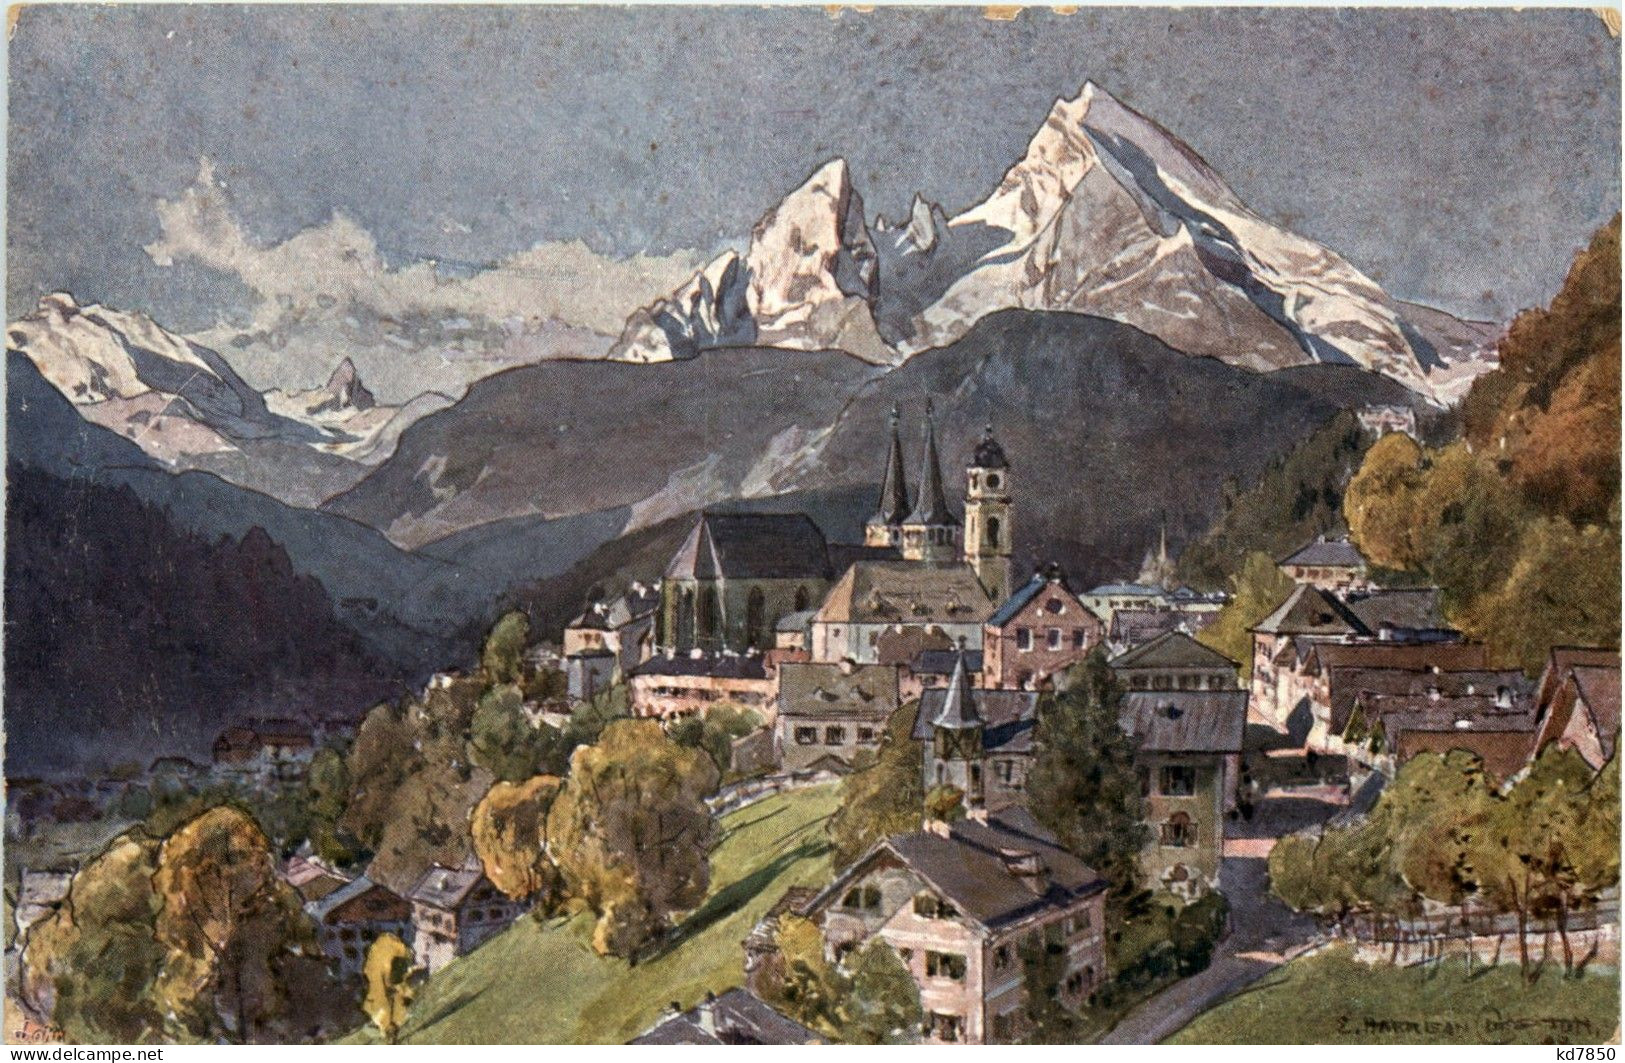 Berchtesgaden - Berchtesgaden